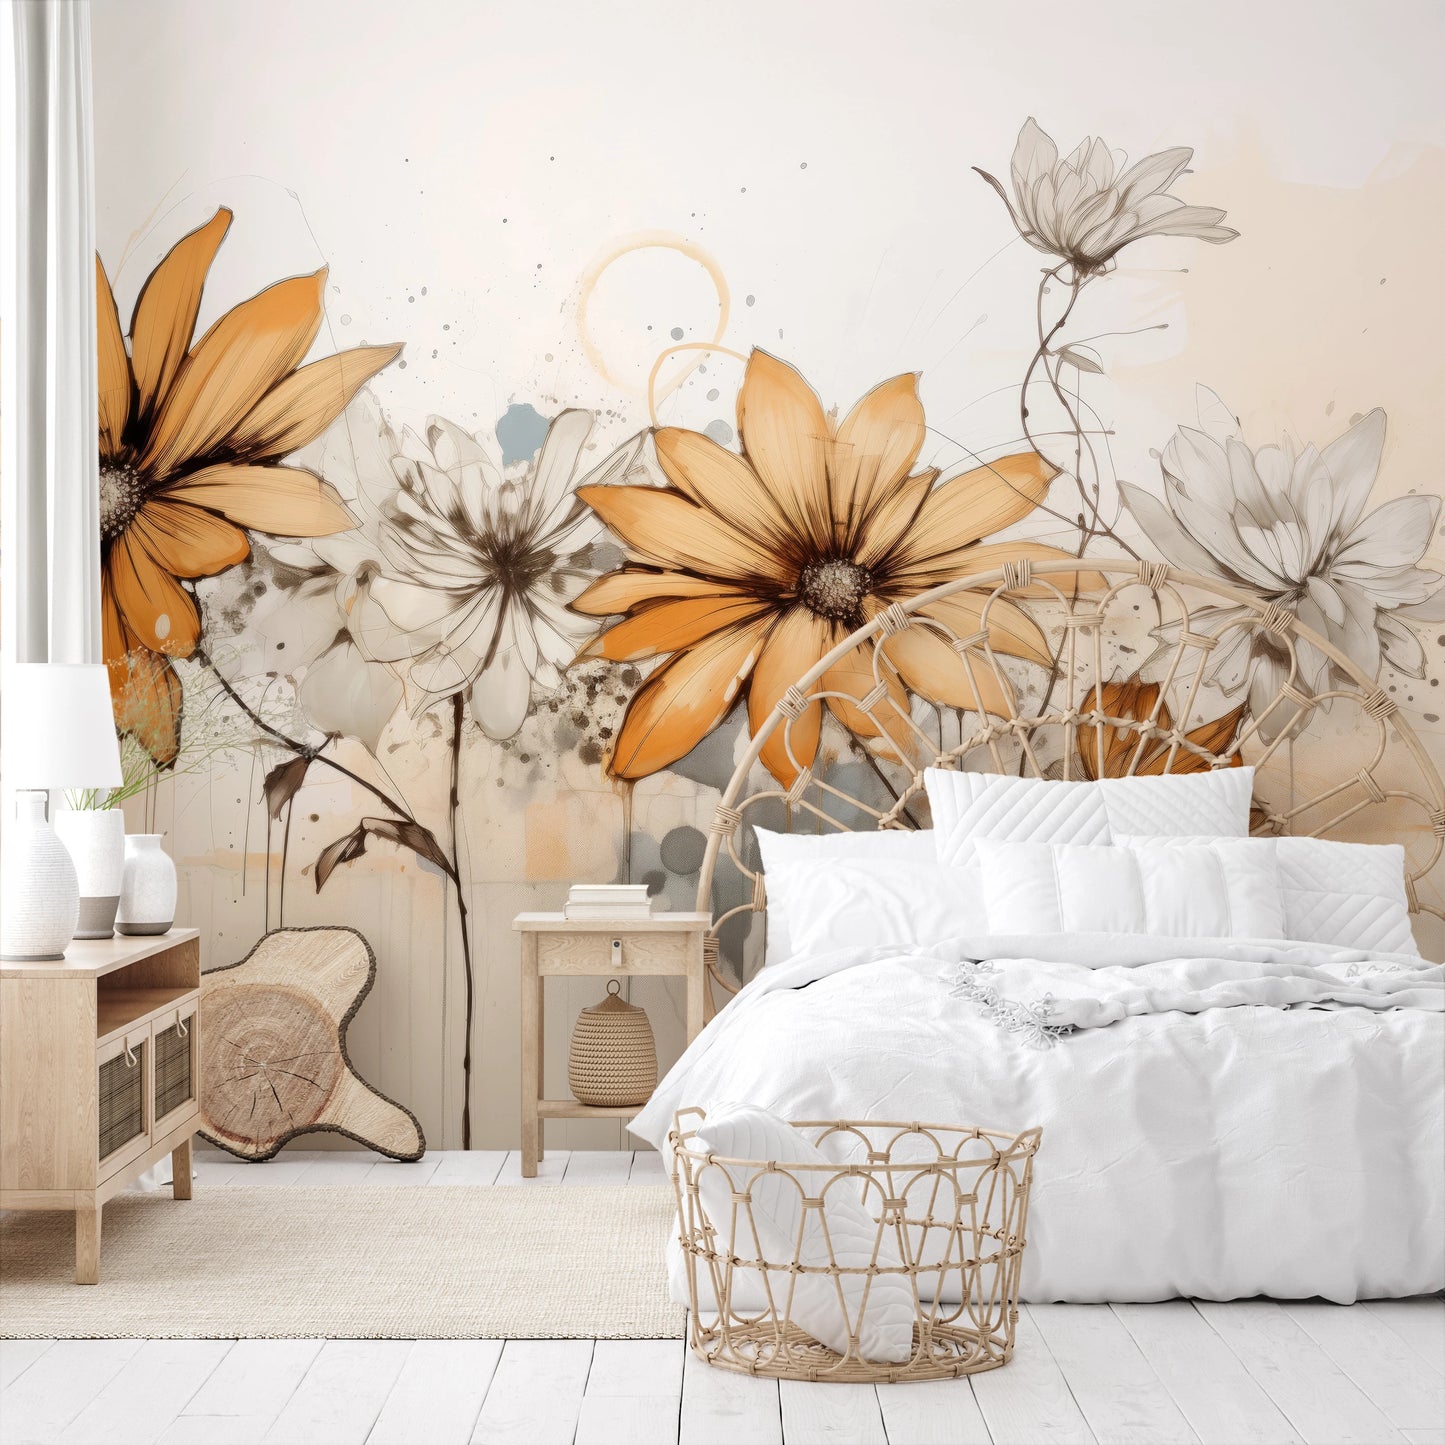 Wzór fototapety malowanej o nazwie Abstract Florals pokazanej w aranżacji wnętrza.